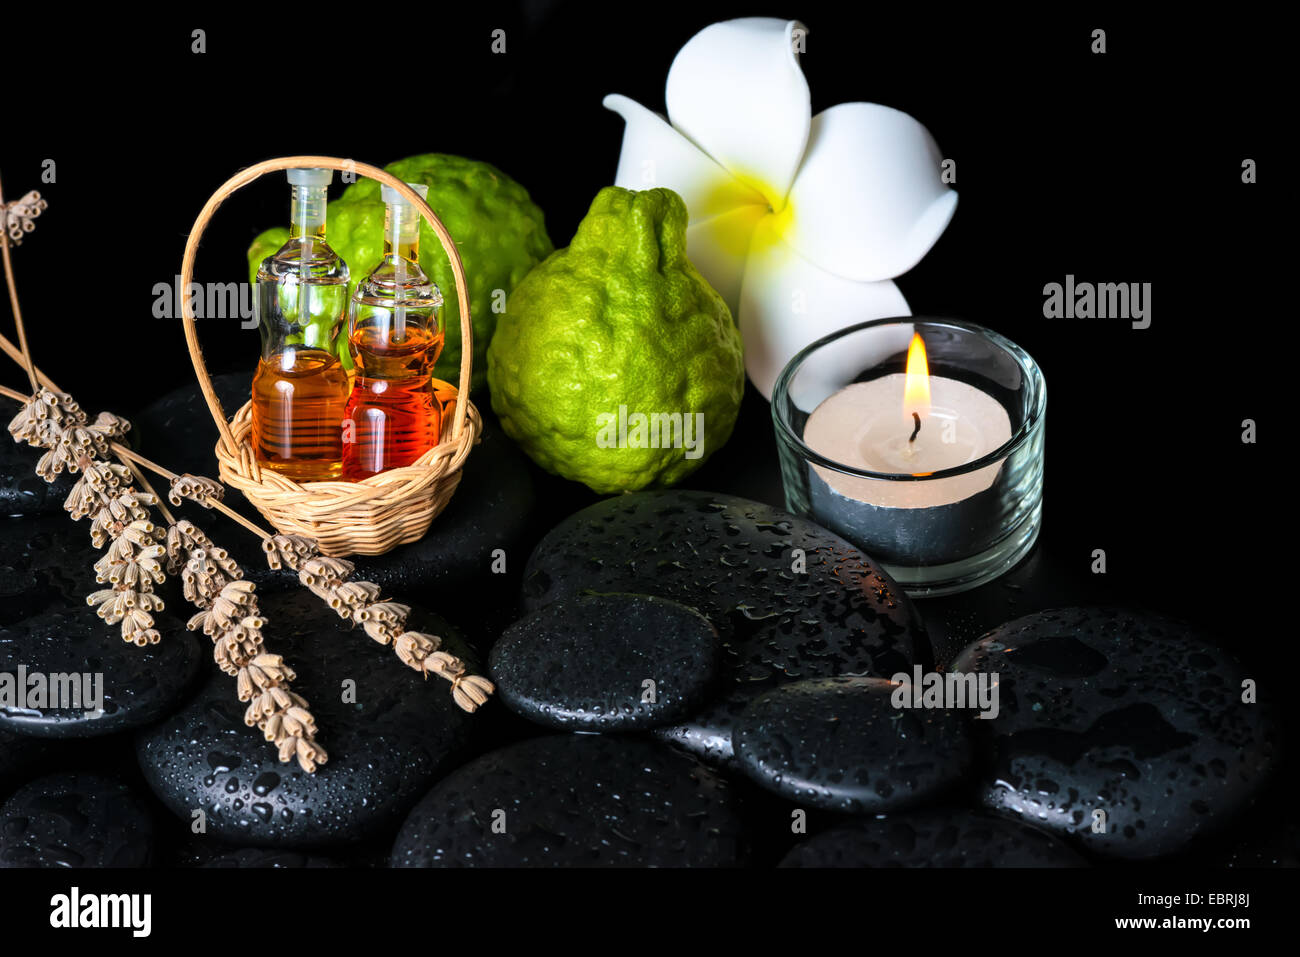 Centro termale aromatico nozione di bottiglie di olio essenziale di bergamotto, frutti, plumeria fiore, candela e lavanda essiccata su pietre zen Foto Stock